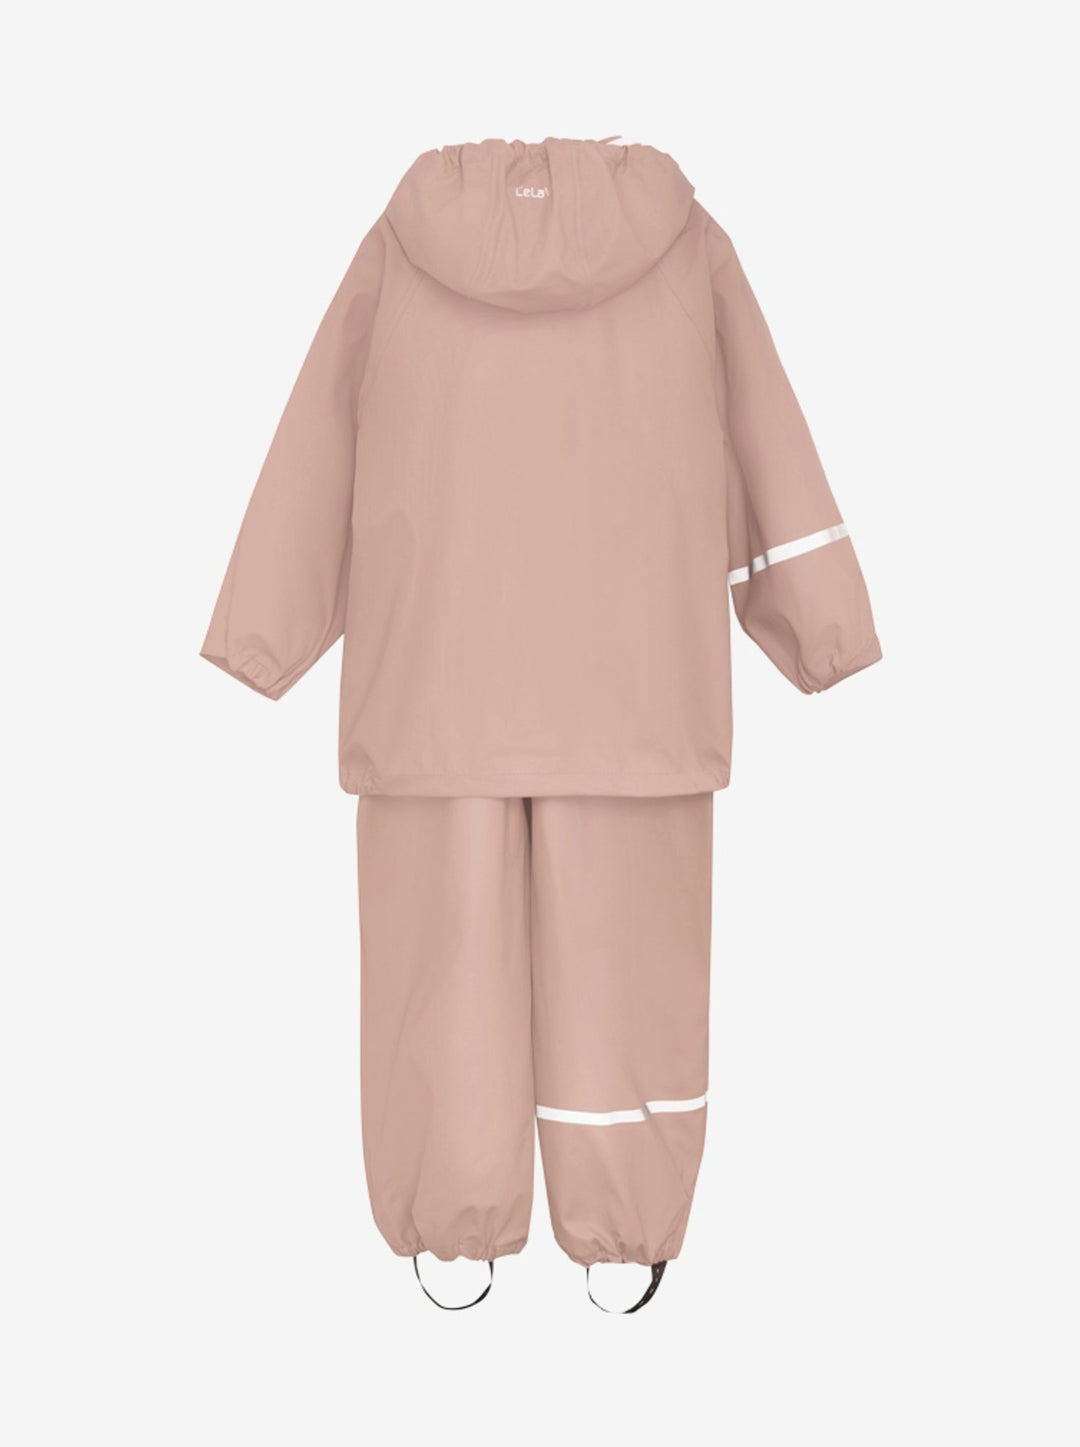 Celavi Spodnie przeciwdeszczowe dla dzieci kurtka przeciwdeszczowa dziecięca Misty Rose 100 cm